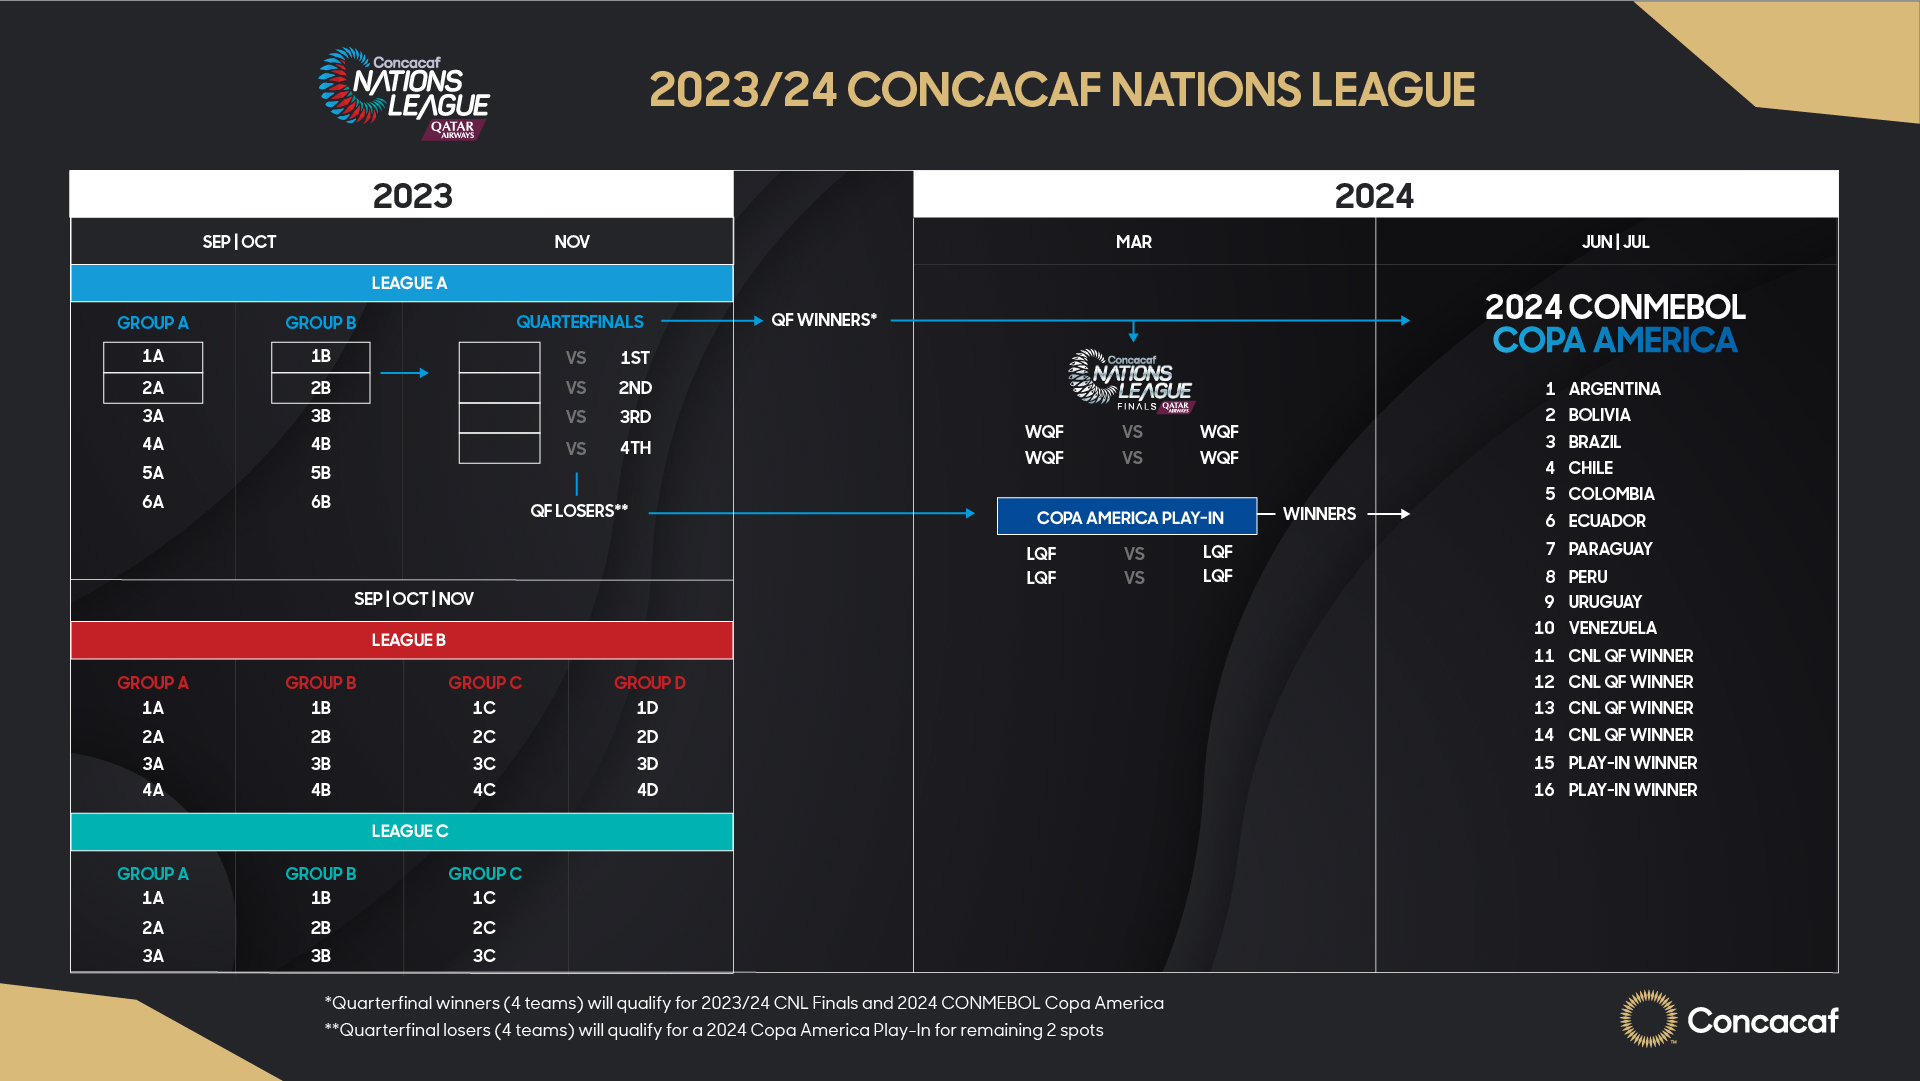 Concacaf anuncia formatos para competencias de selecciones nacionales masculinas del 2023-2026